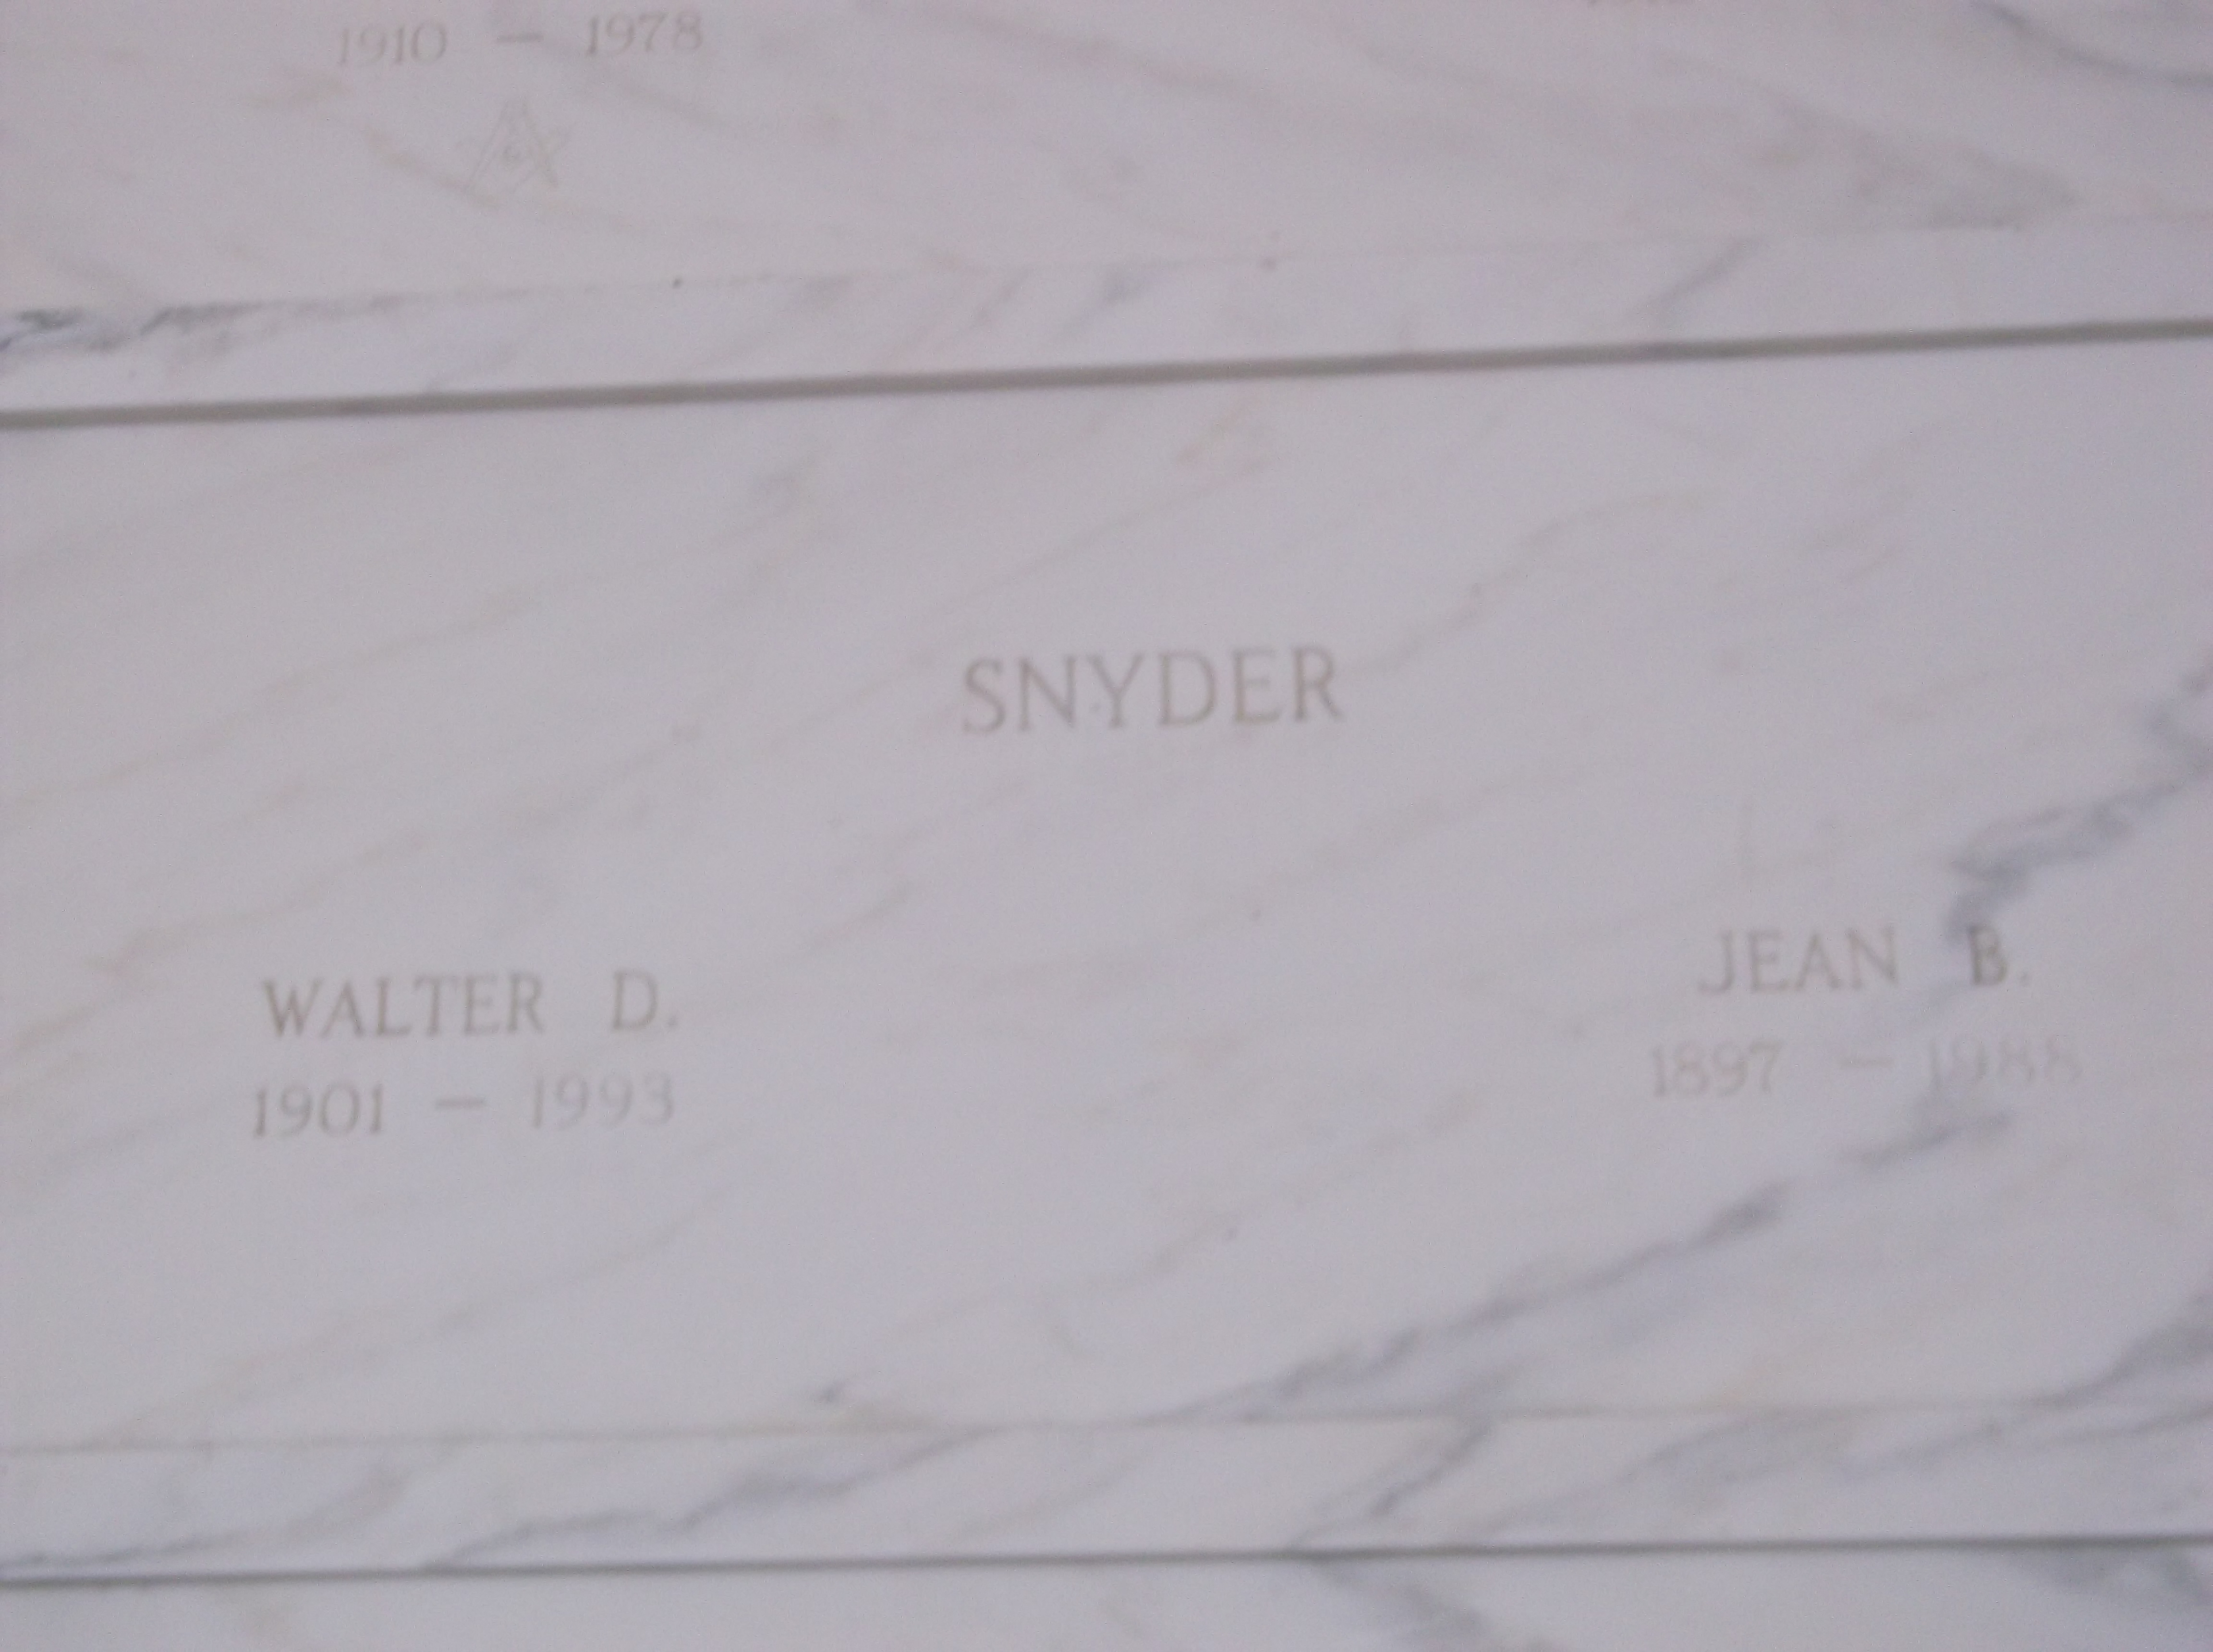 Walter D Snyder